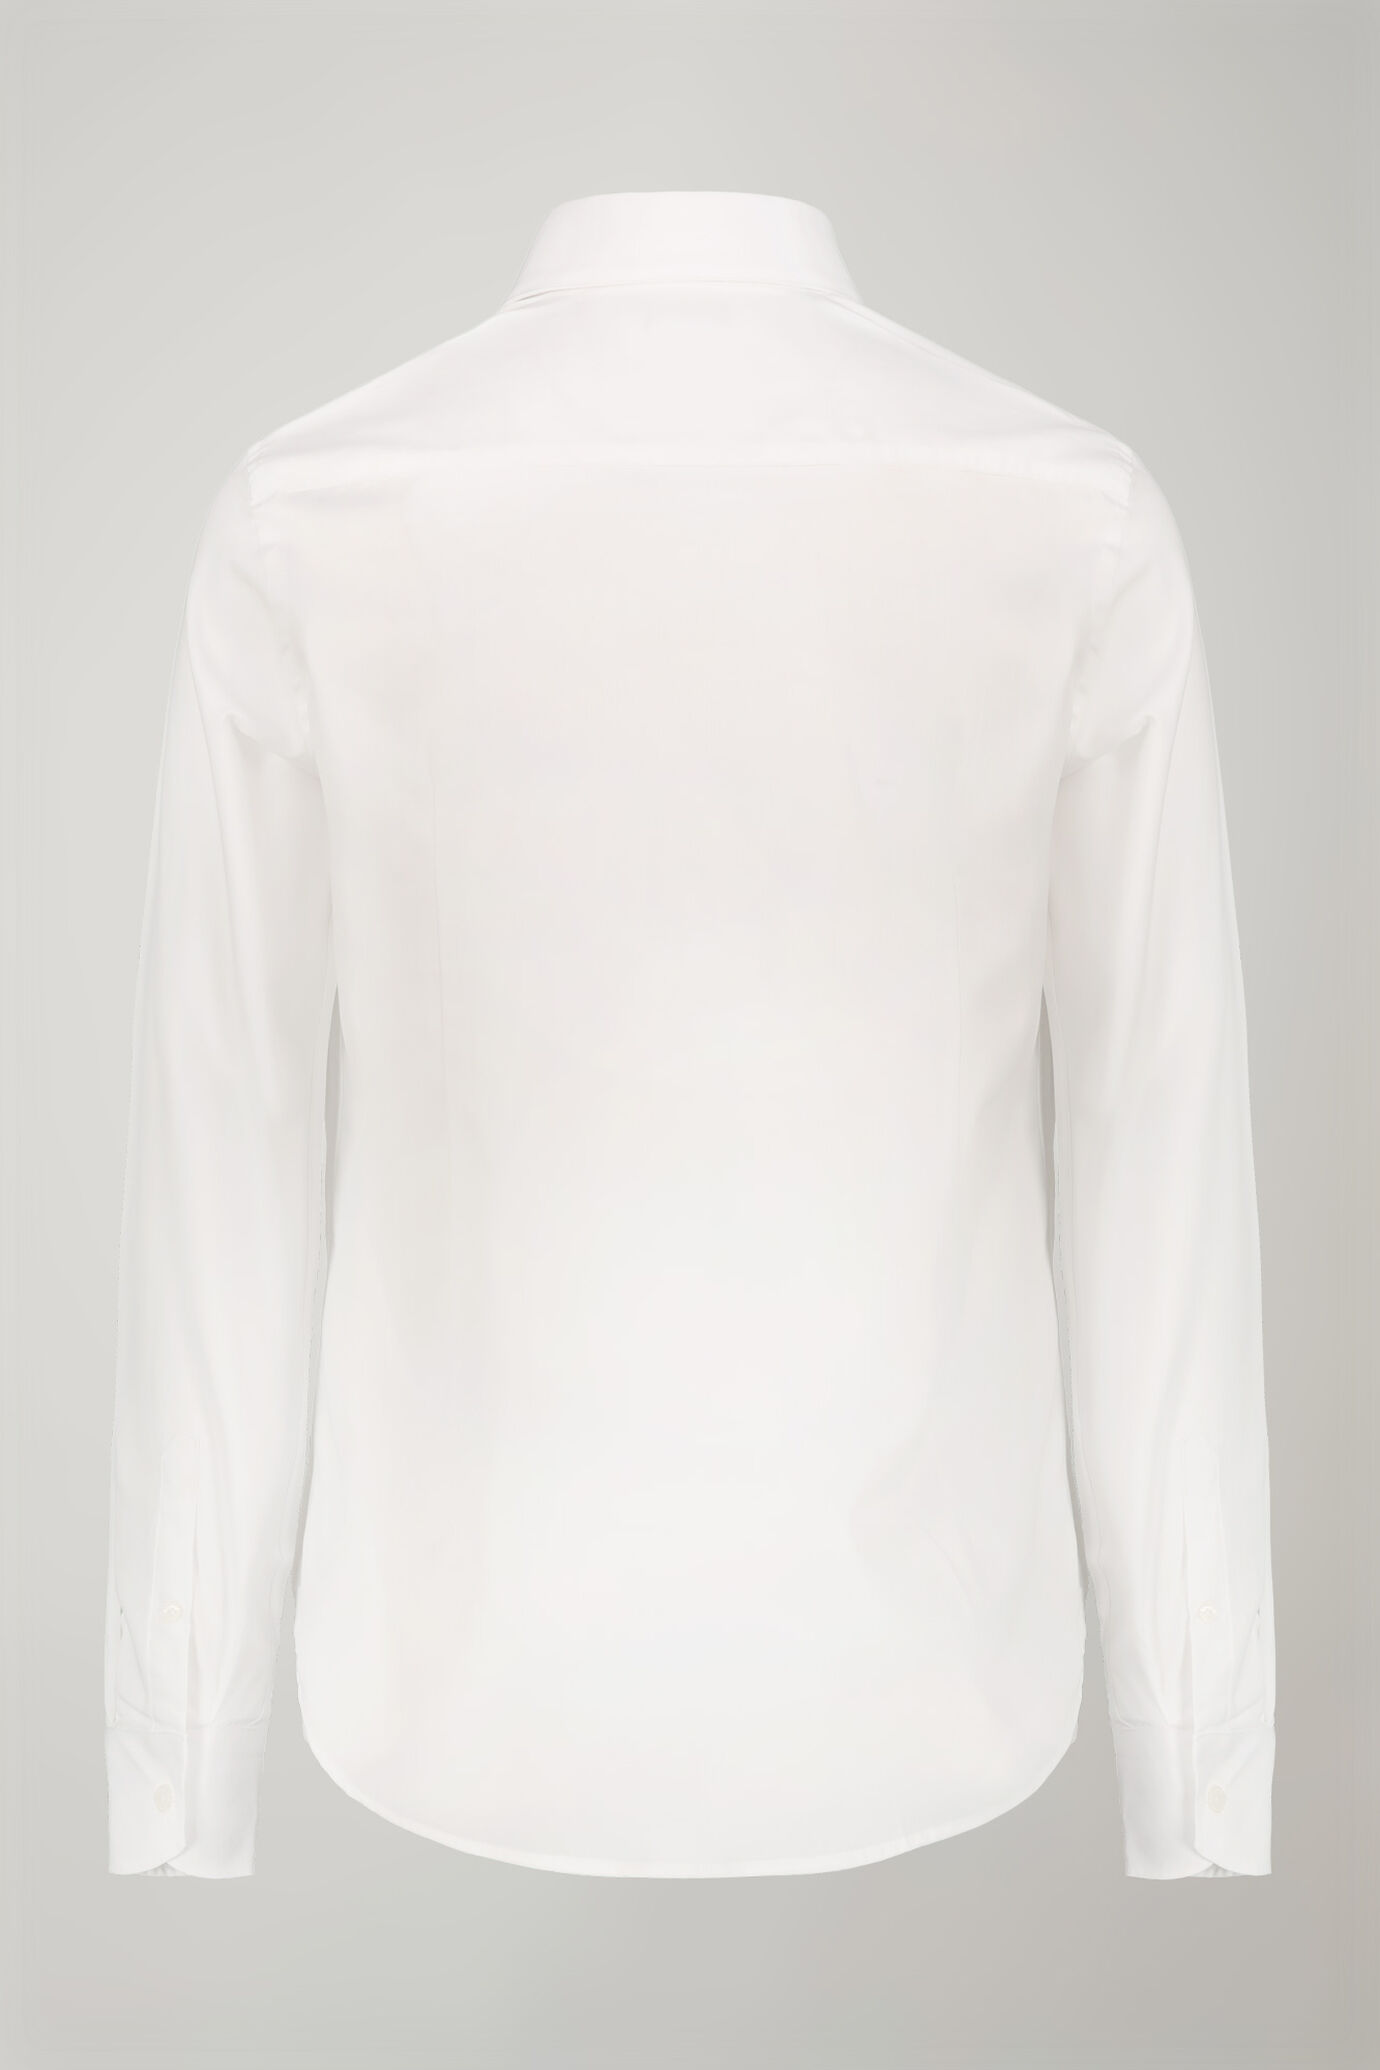 Men's shirt classic collar 100% cotton plain fabric regular fit image number 5